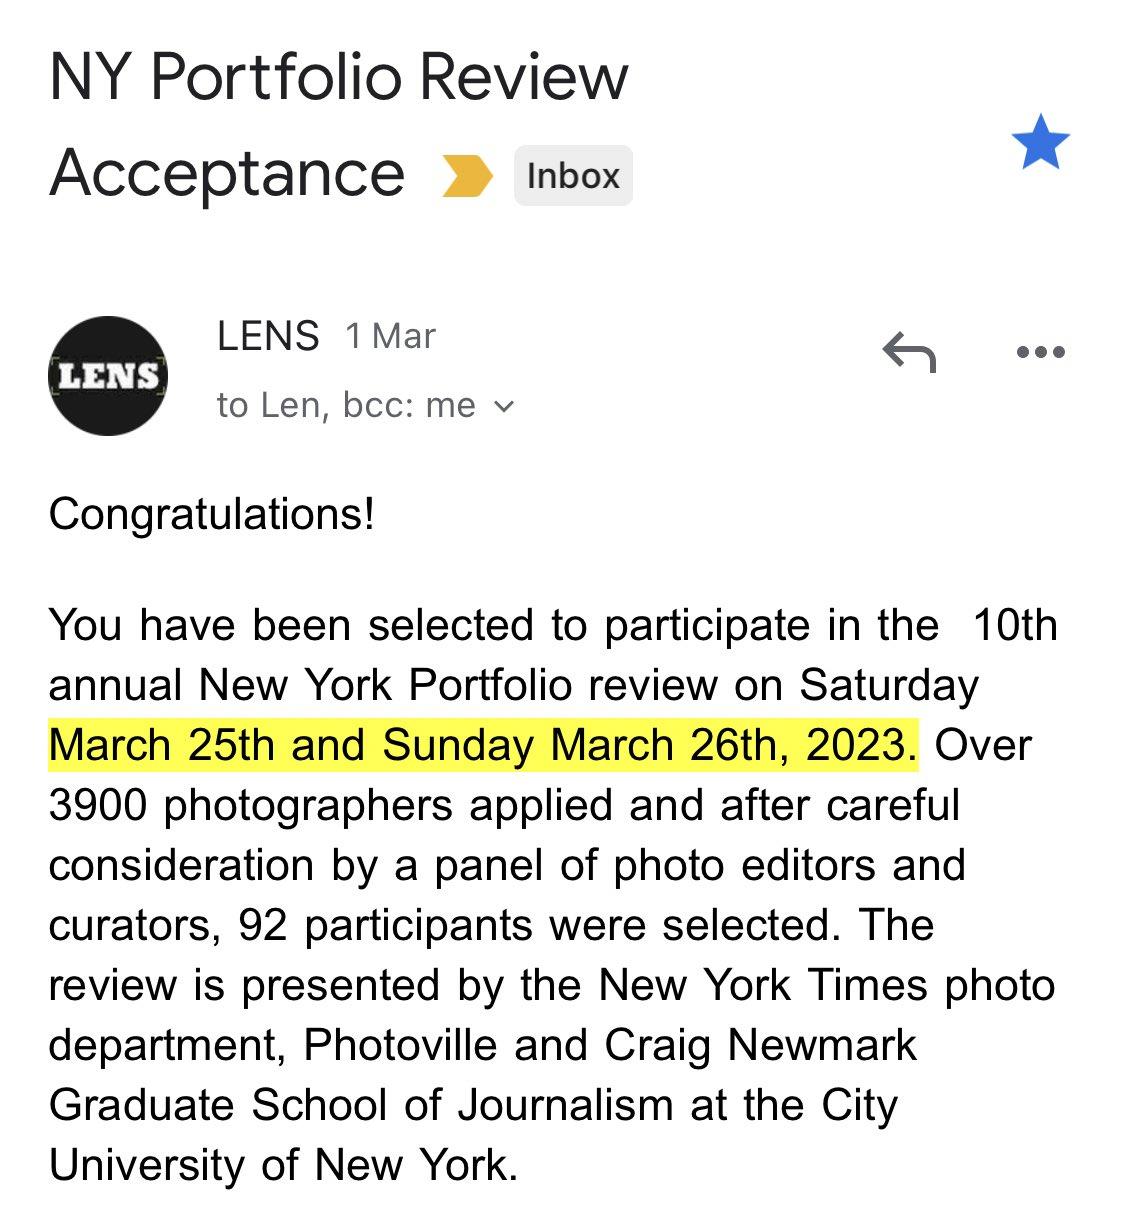 NY Portfolio Review 2023